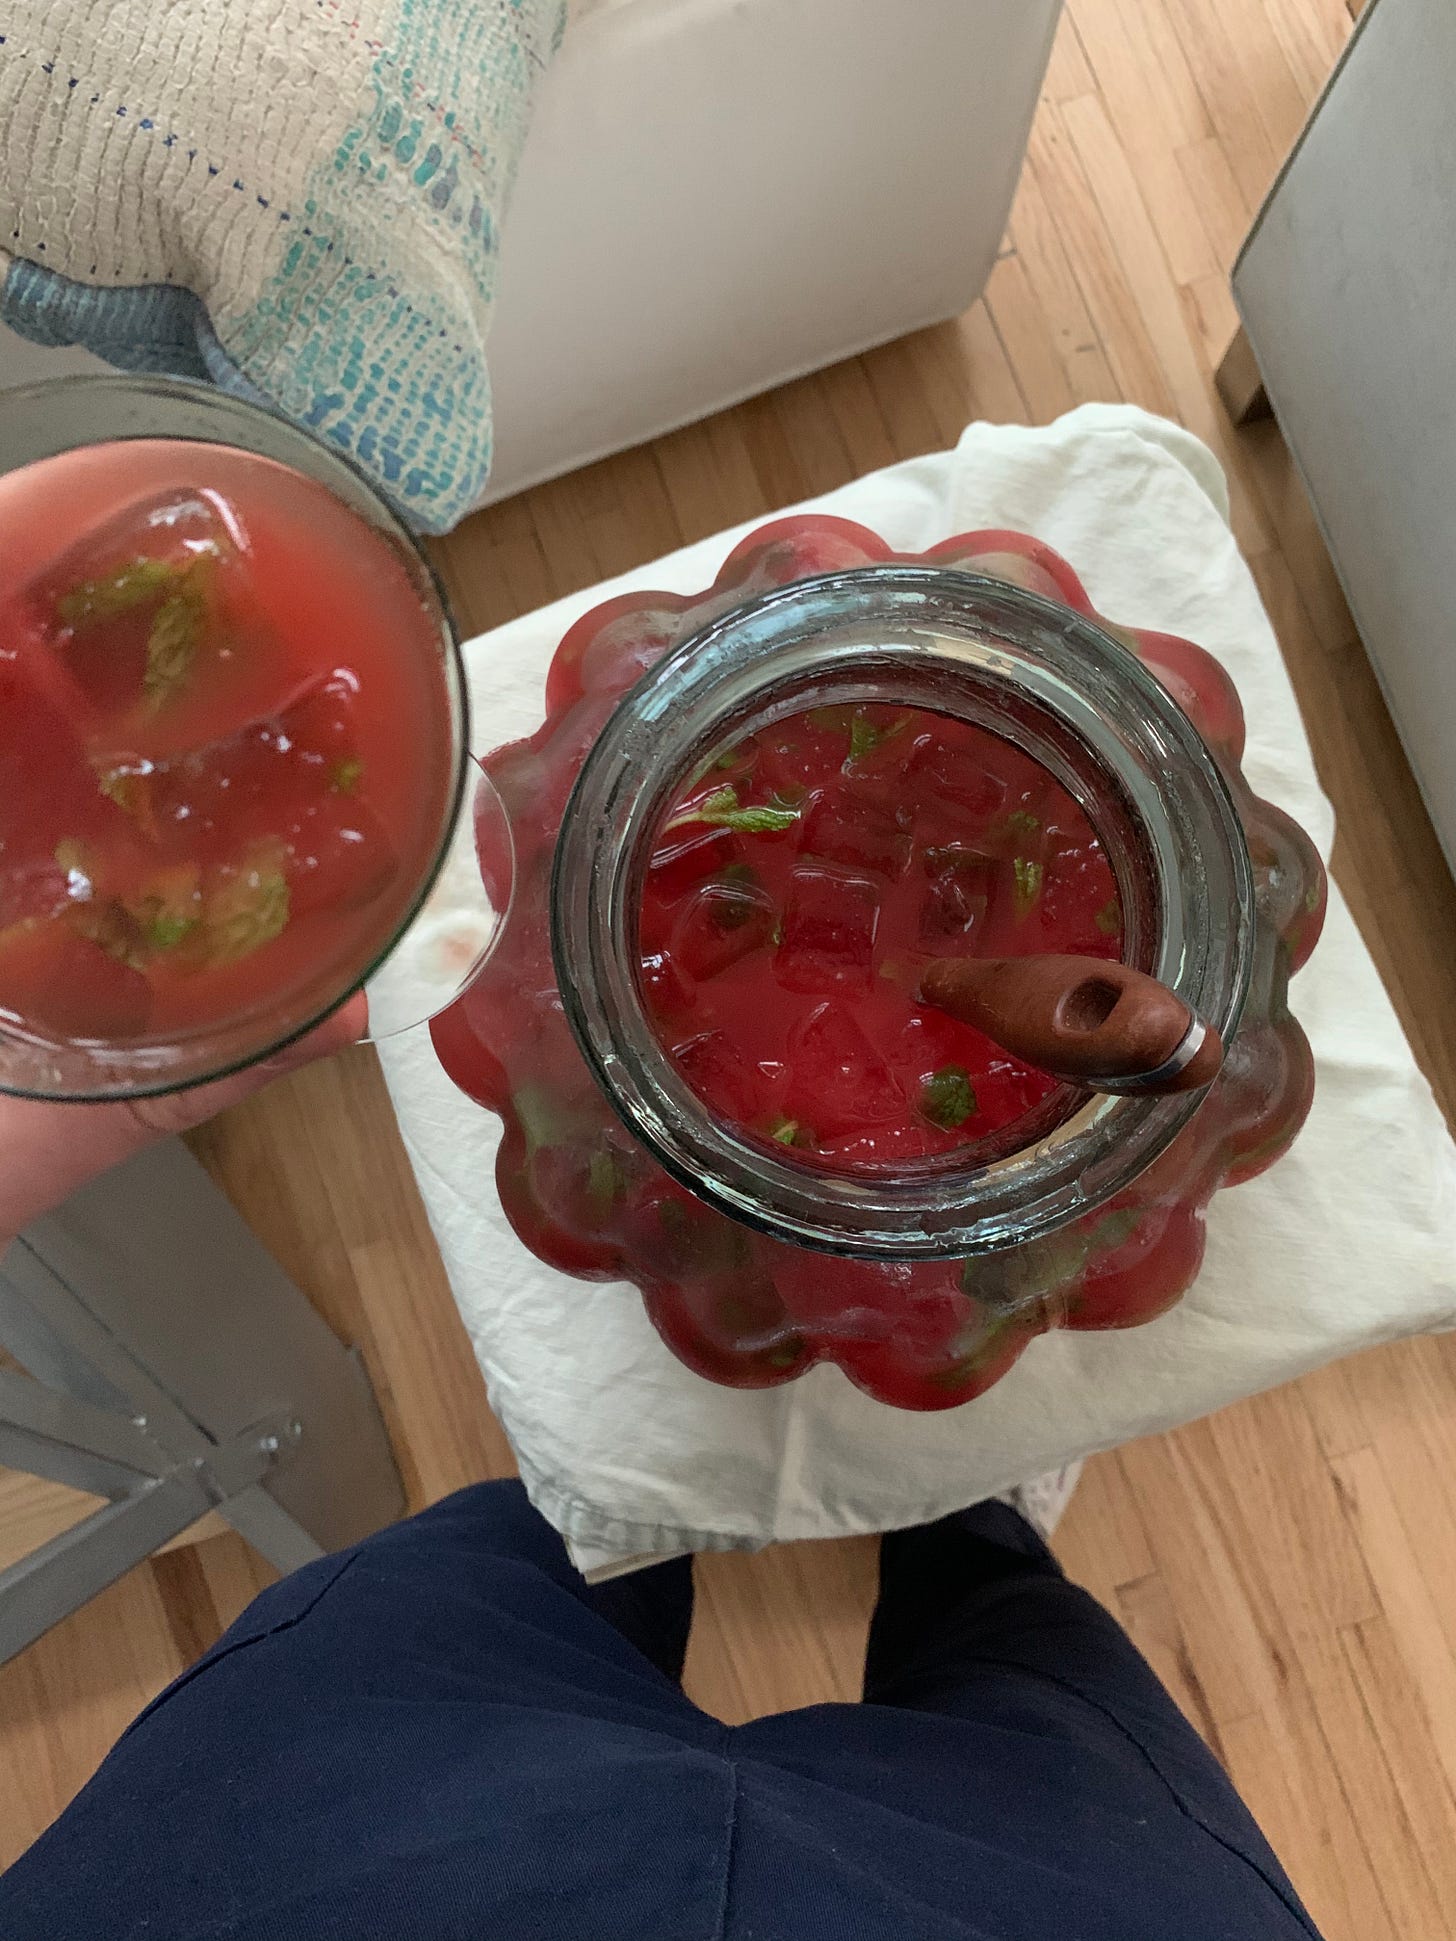 soju watermelon drink in jar, jakes legs